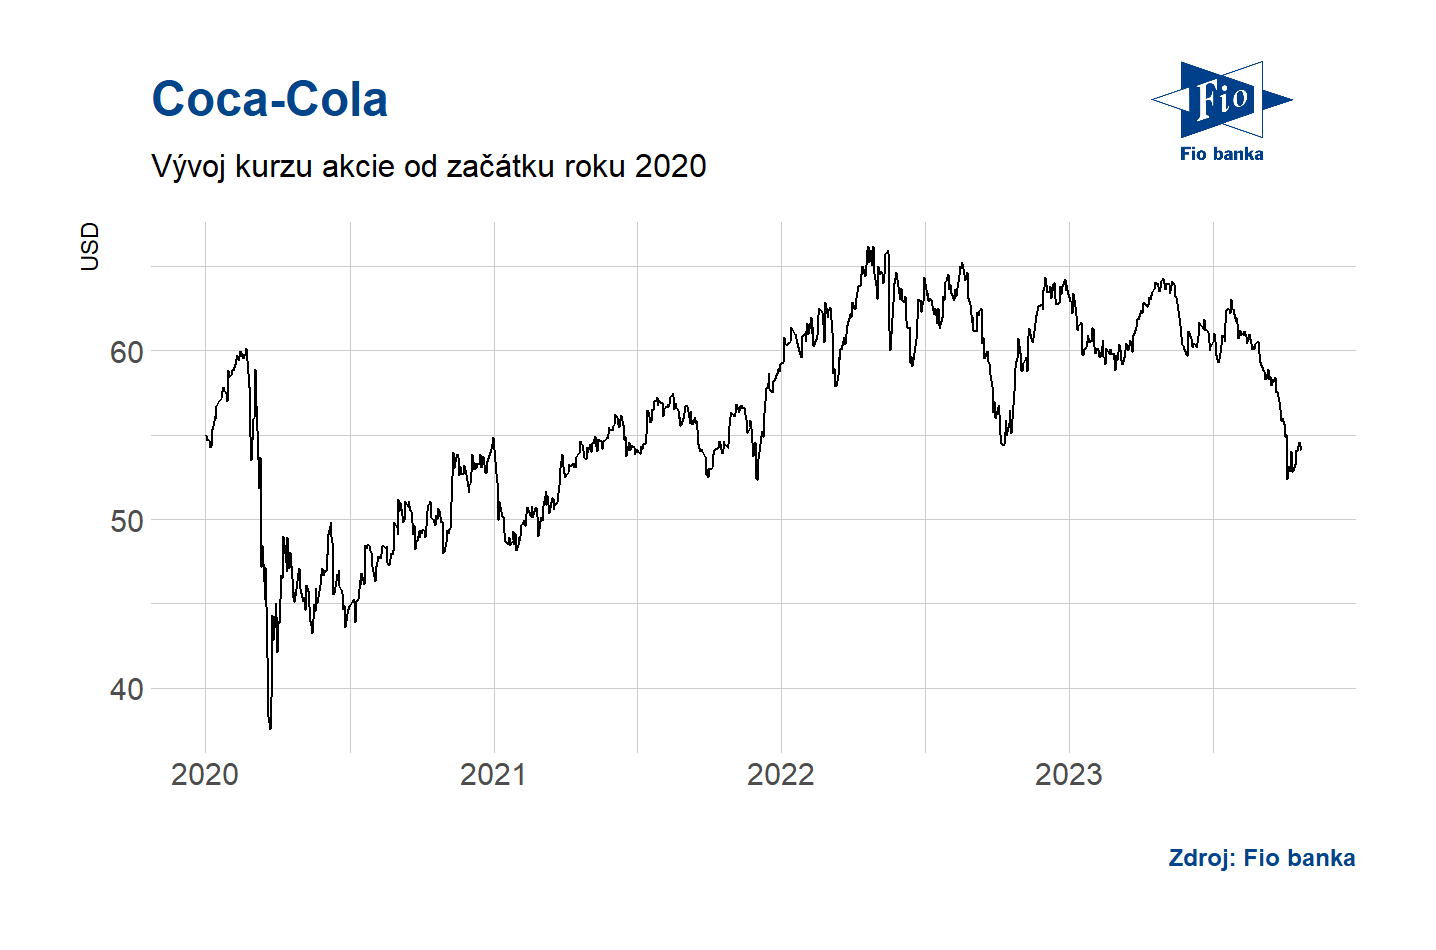 Vývoj akcie Coca-Cola